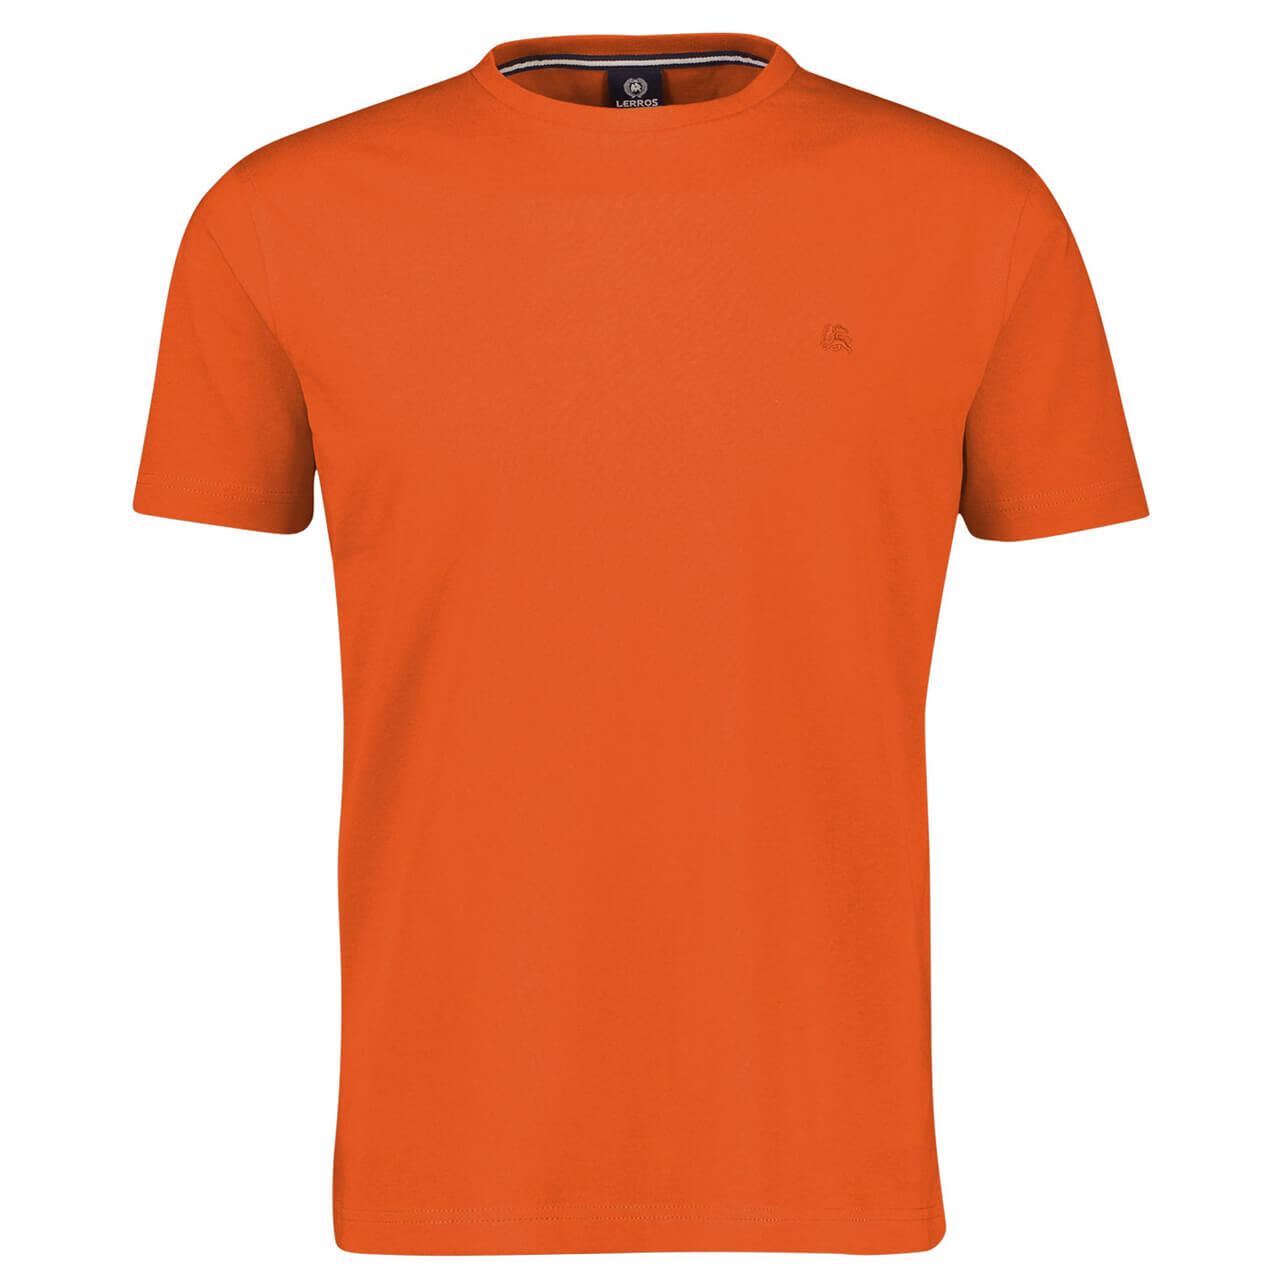 Lerros T-Shirt für Herren in Orange, FarbNr.: 335